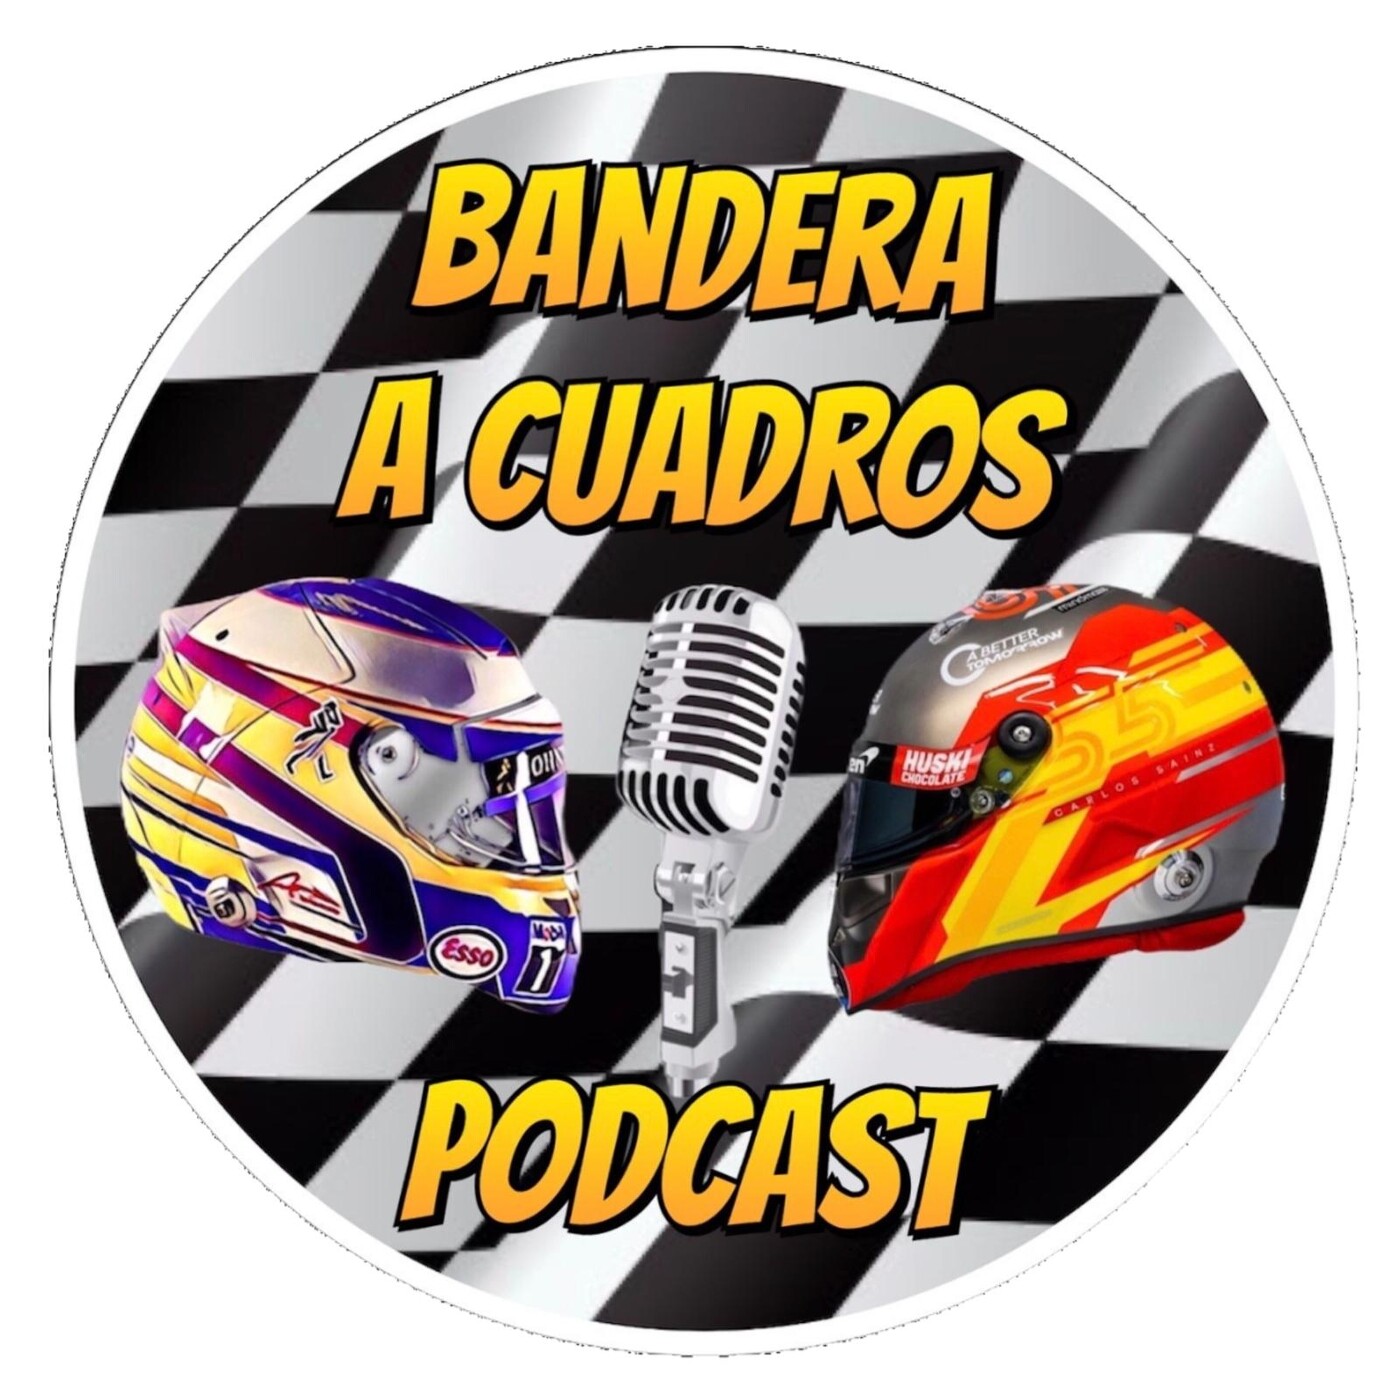 F1 BANDERA A CUADROS – PODCAST DE FORMULA 1